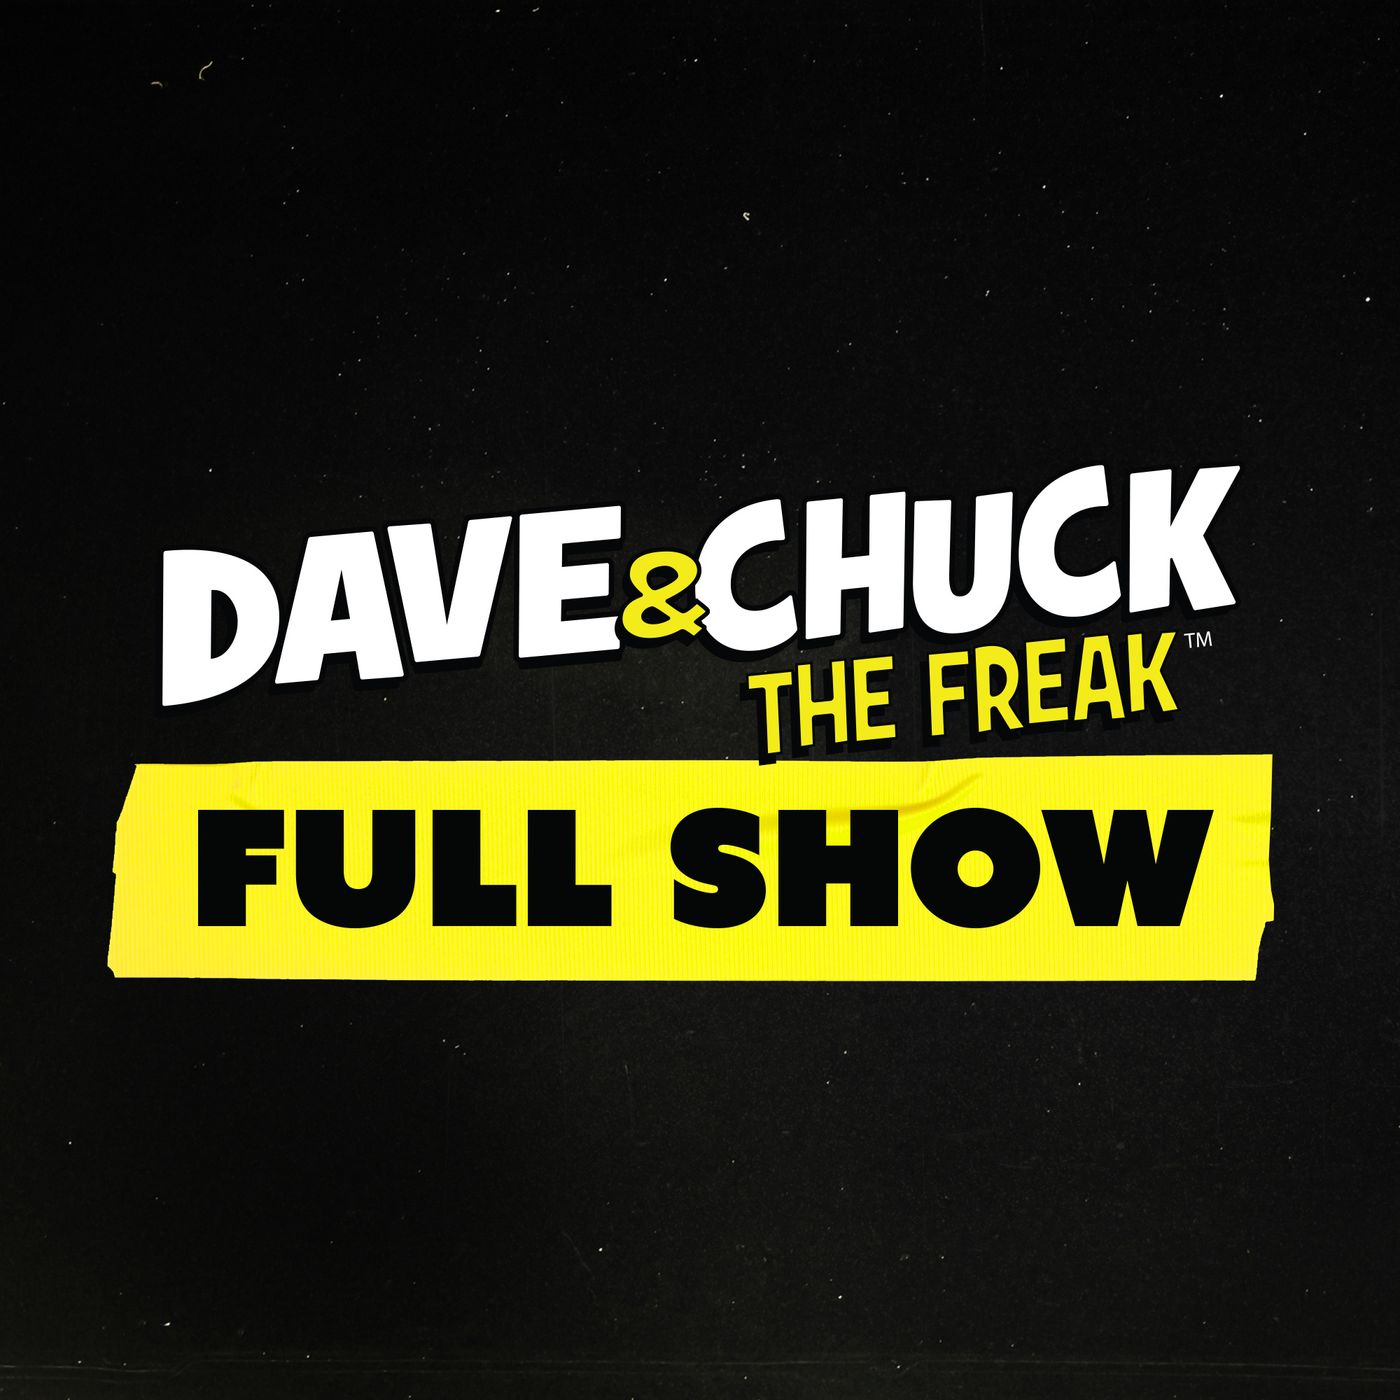 Thursday, January 19th 2023 Dave & Chuck the Freak Podcast